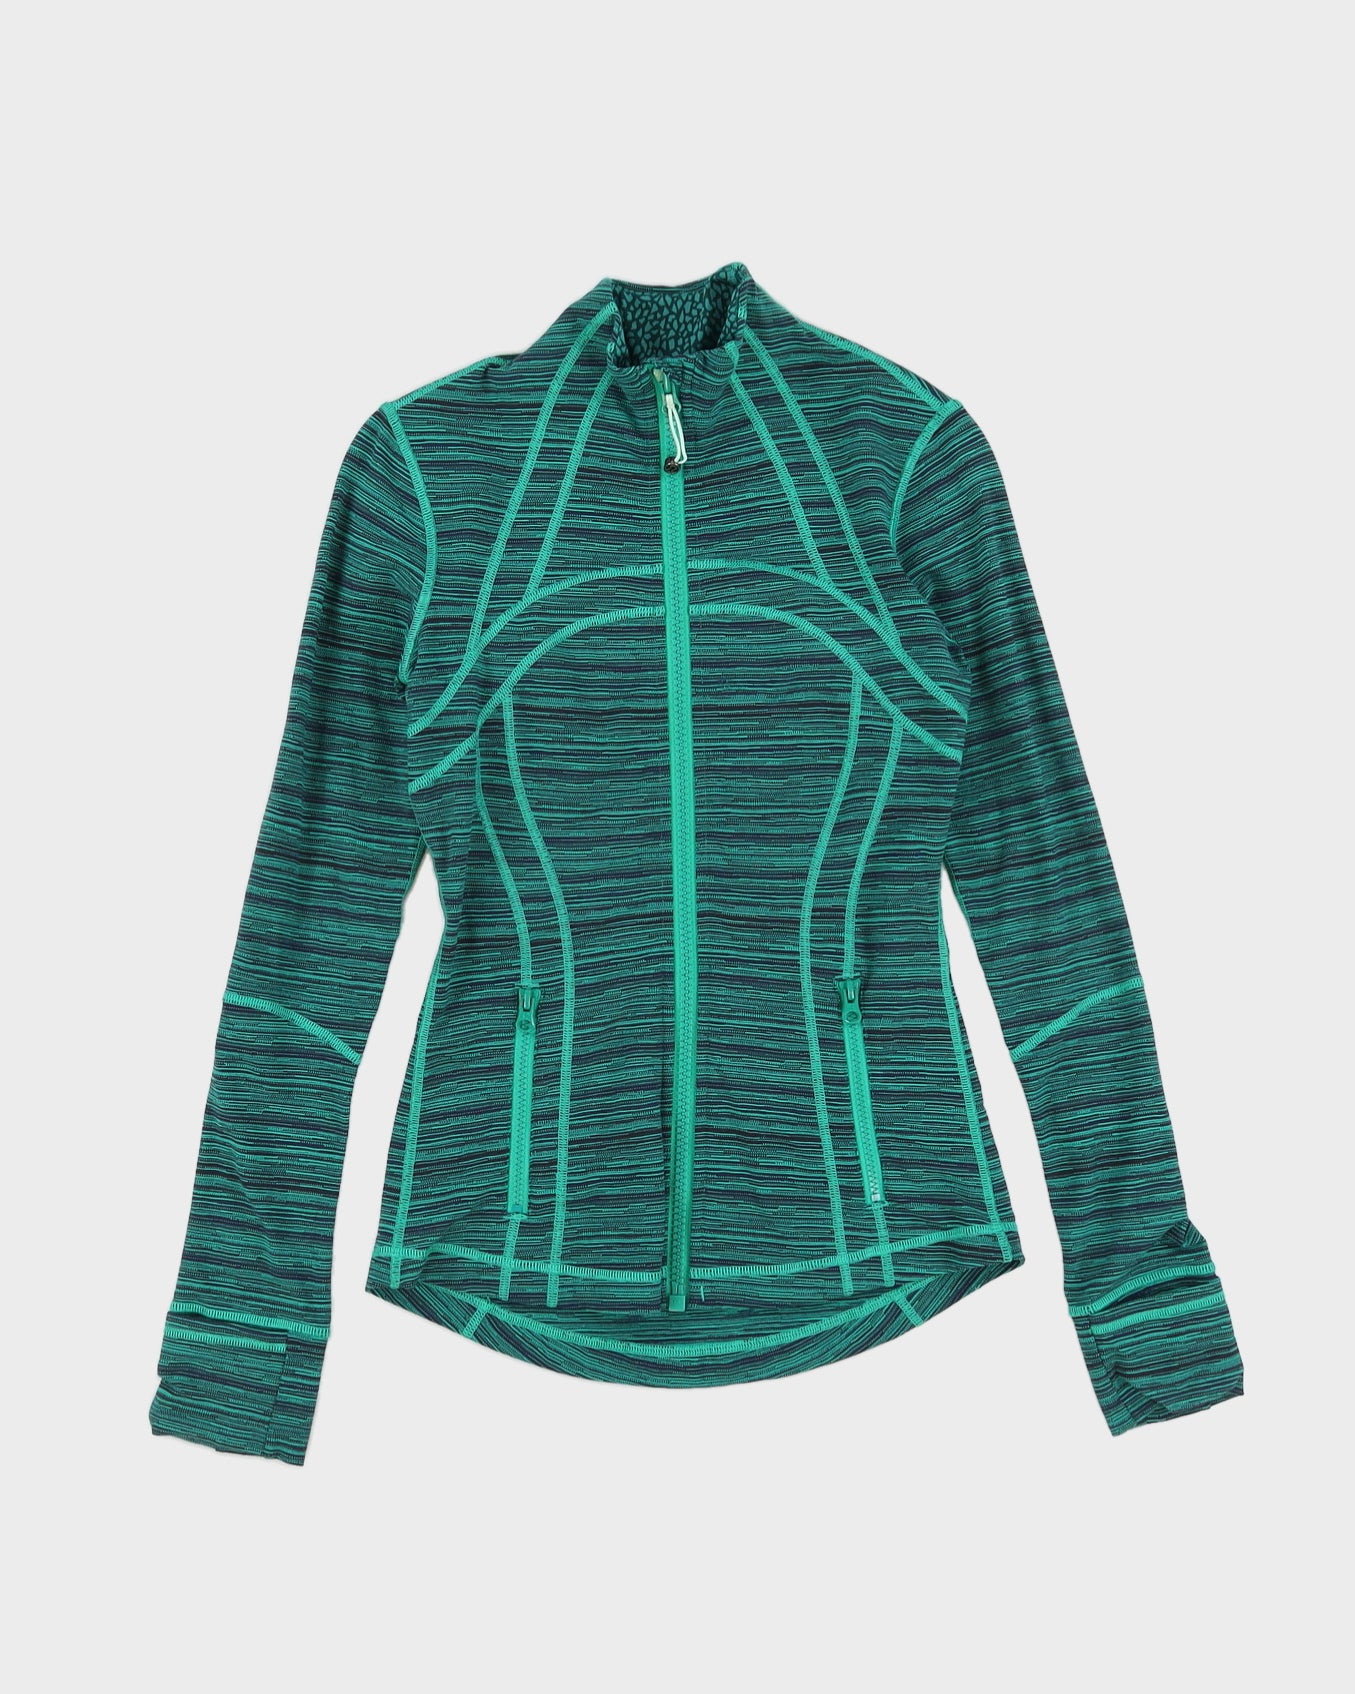 Lululemon Green Melange Sports Jacket - XS